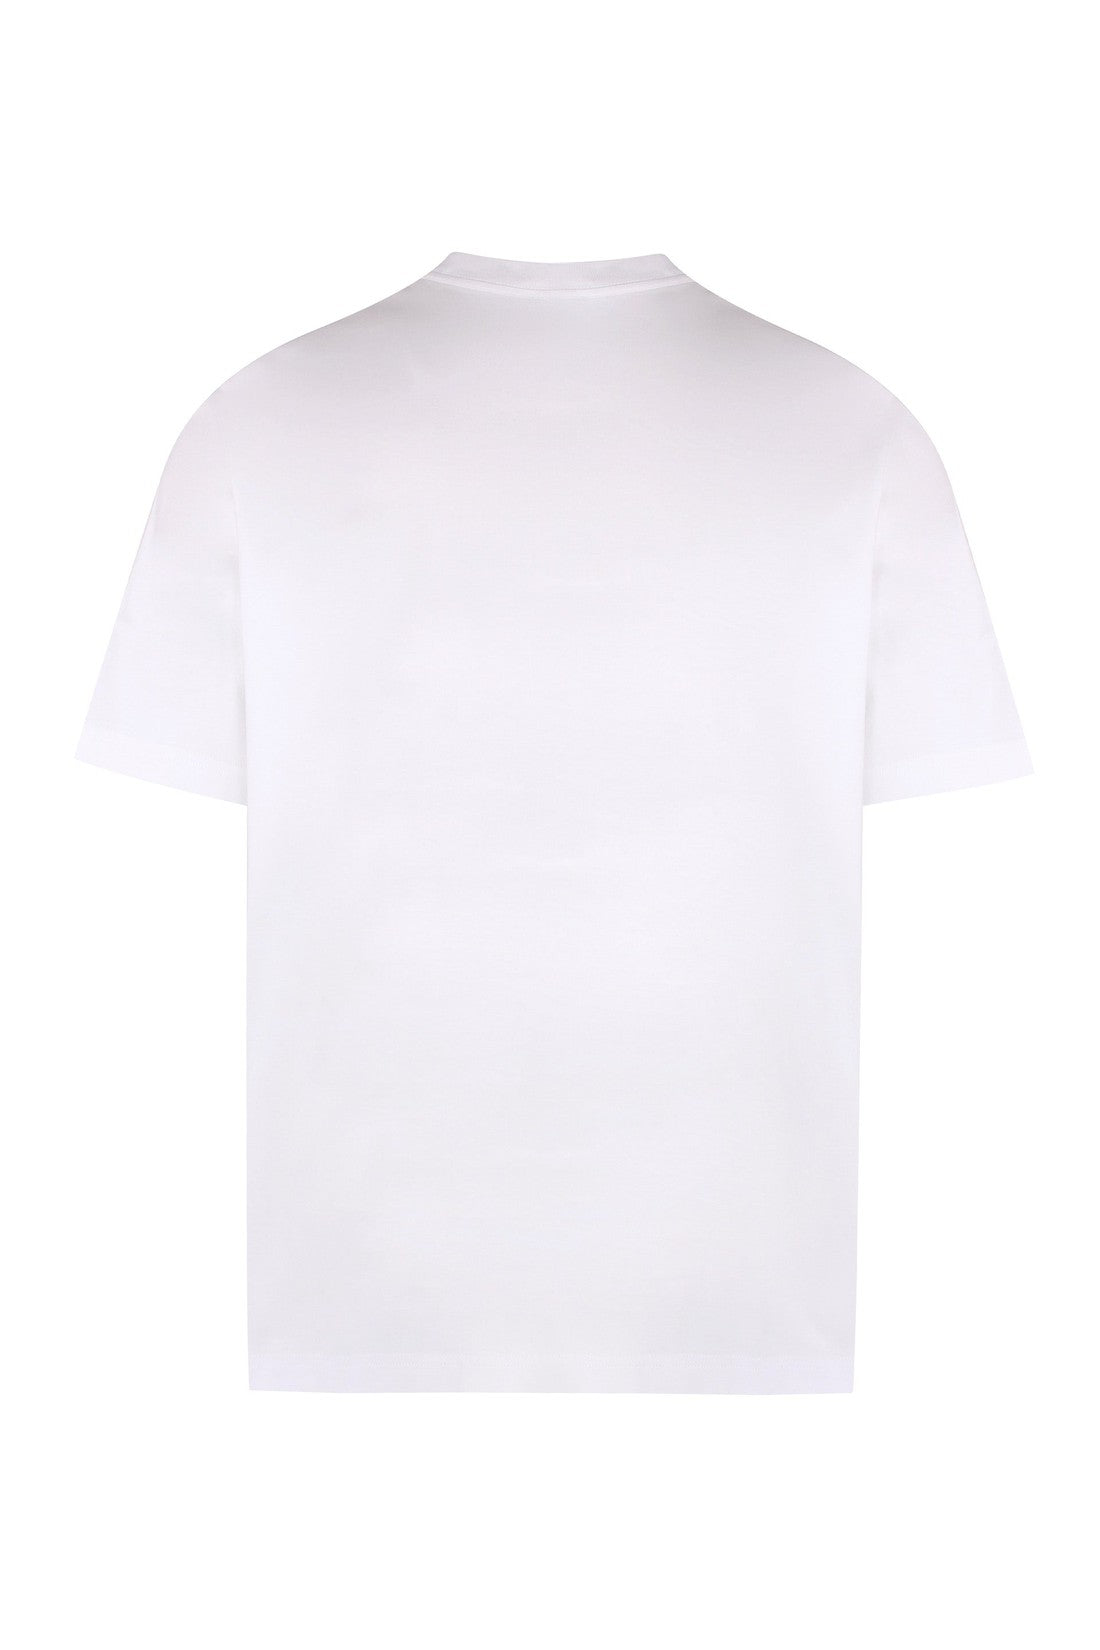 Lanvin-OUTLET-SALE-Logo cotton t-shirt-ARCHIVIST